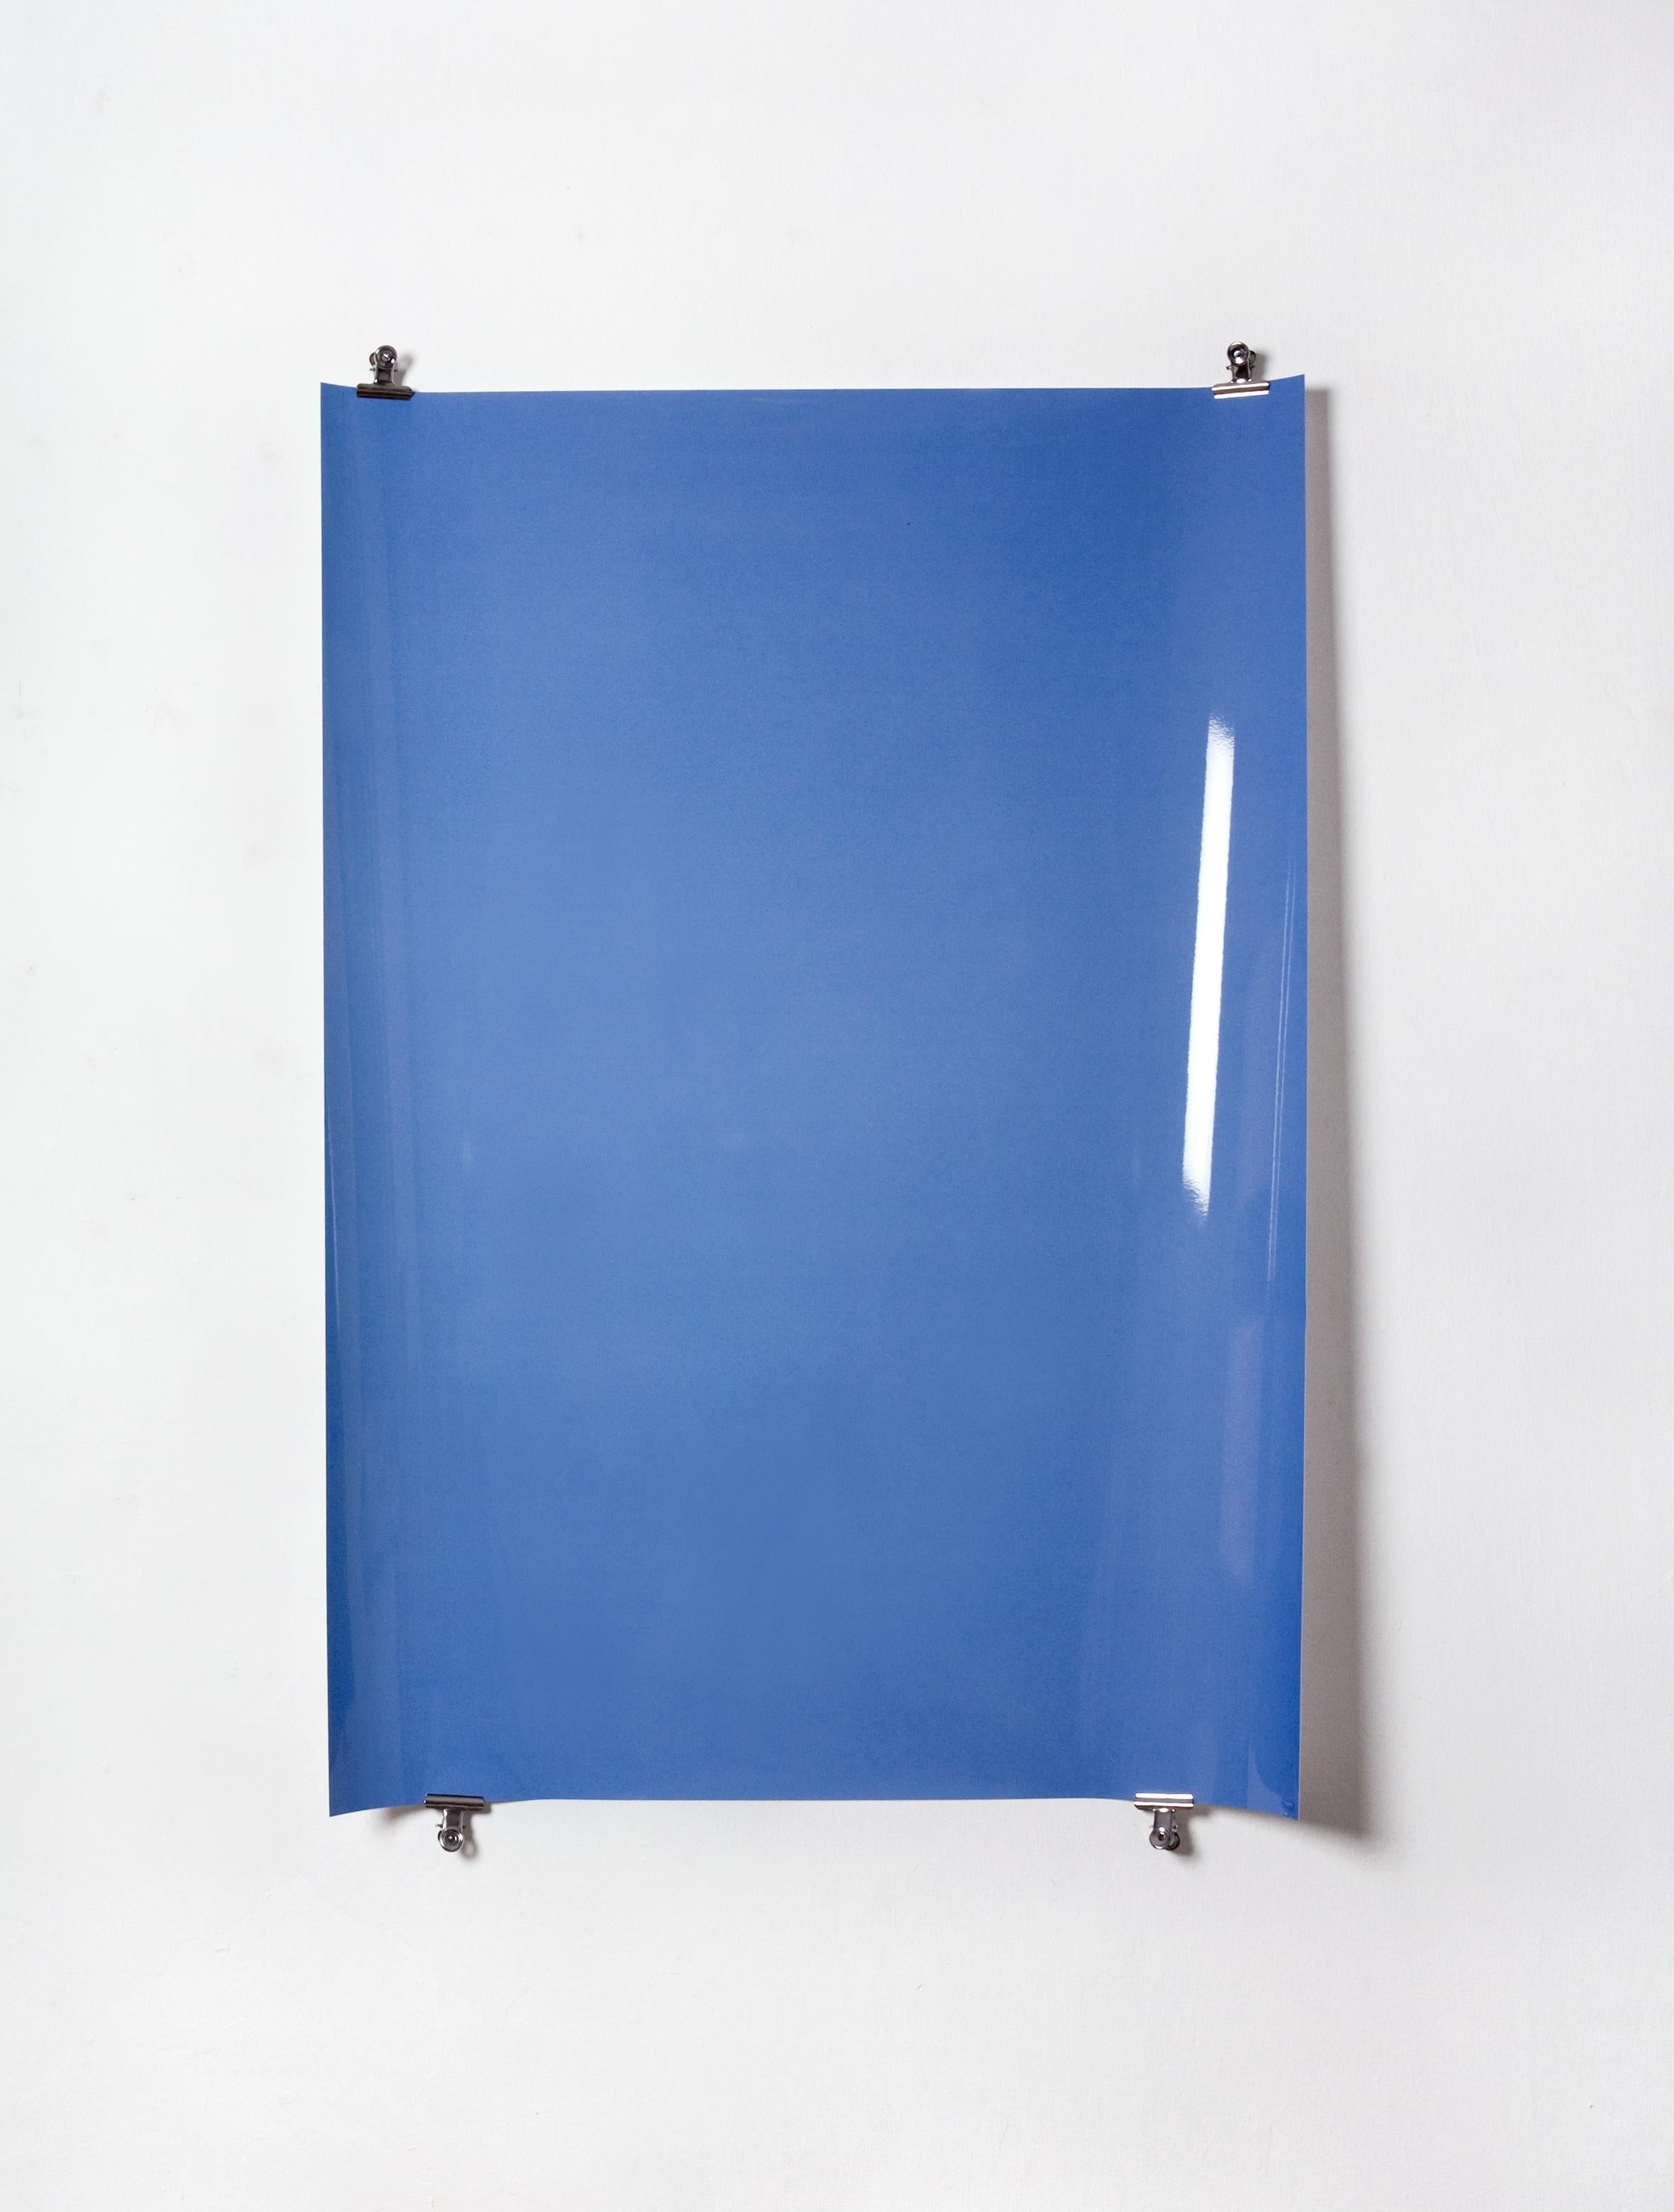 Schatten auf Papier, Nr. 4 – Zeitgenössische abstrakte blaue monochrome Fotografie – Photograph von Ulrike Königshofer